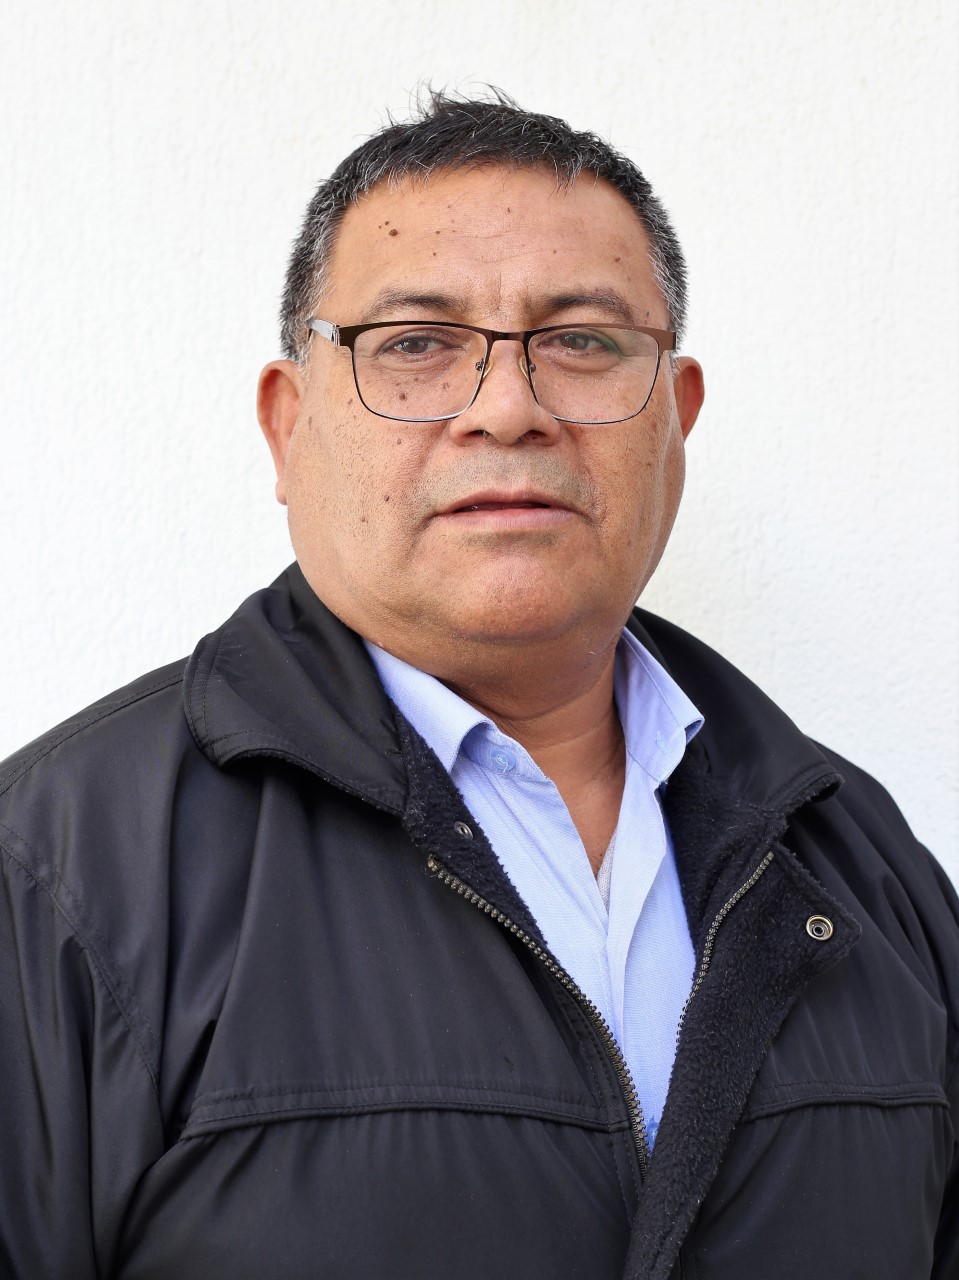 Nilton Barrera Rivera